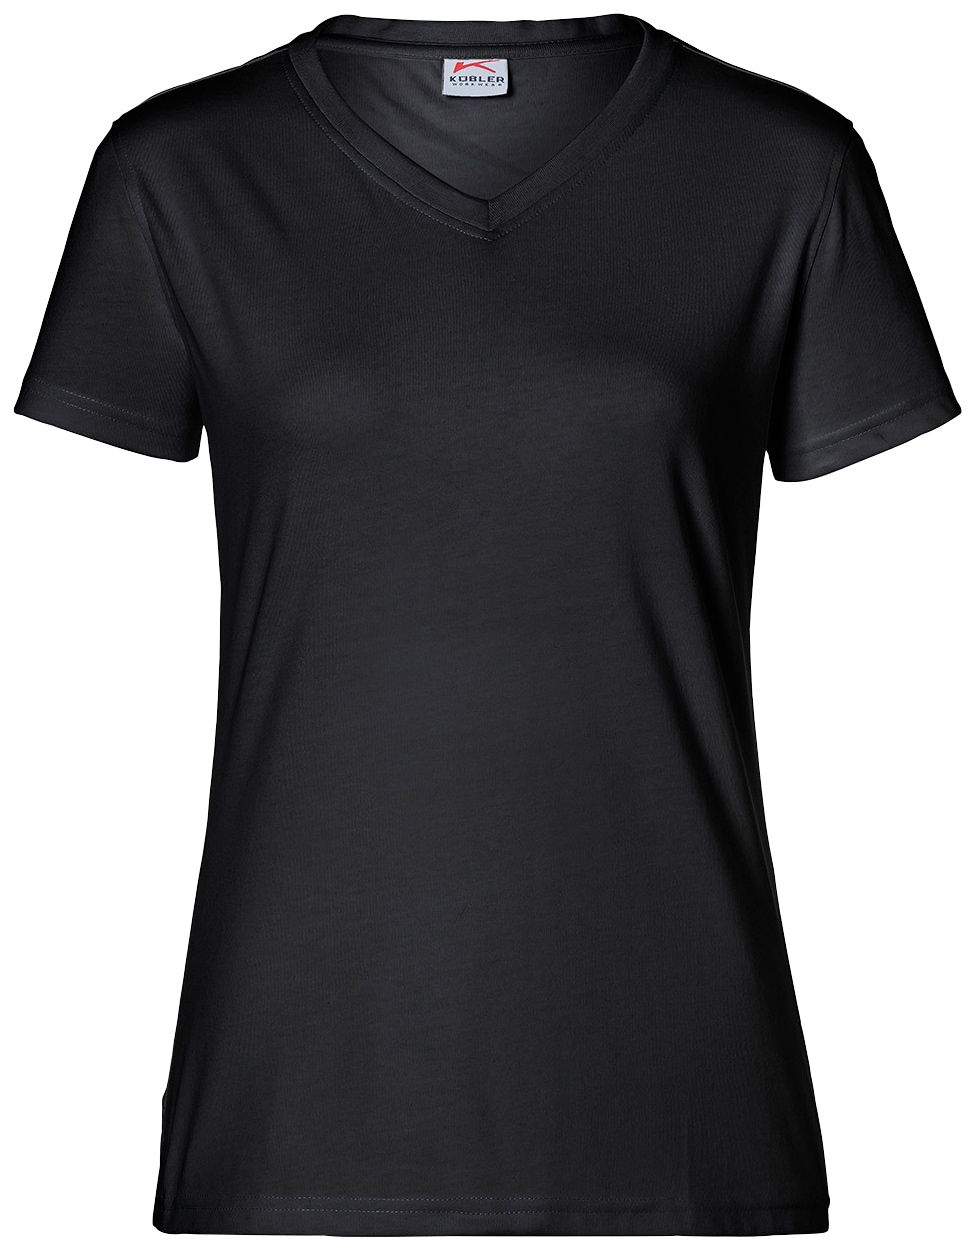 Kübler T-Shirt, für Damen, OTTOversand 4XL Größe: - bei XS